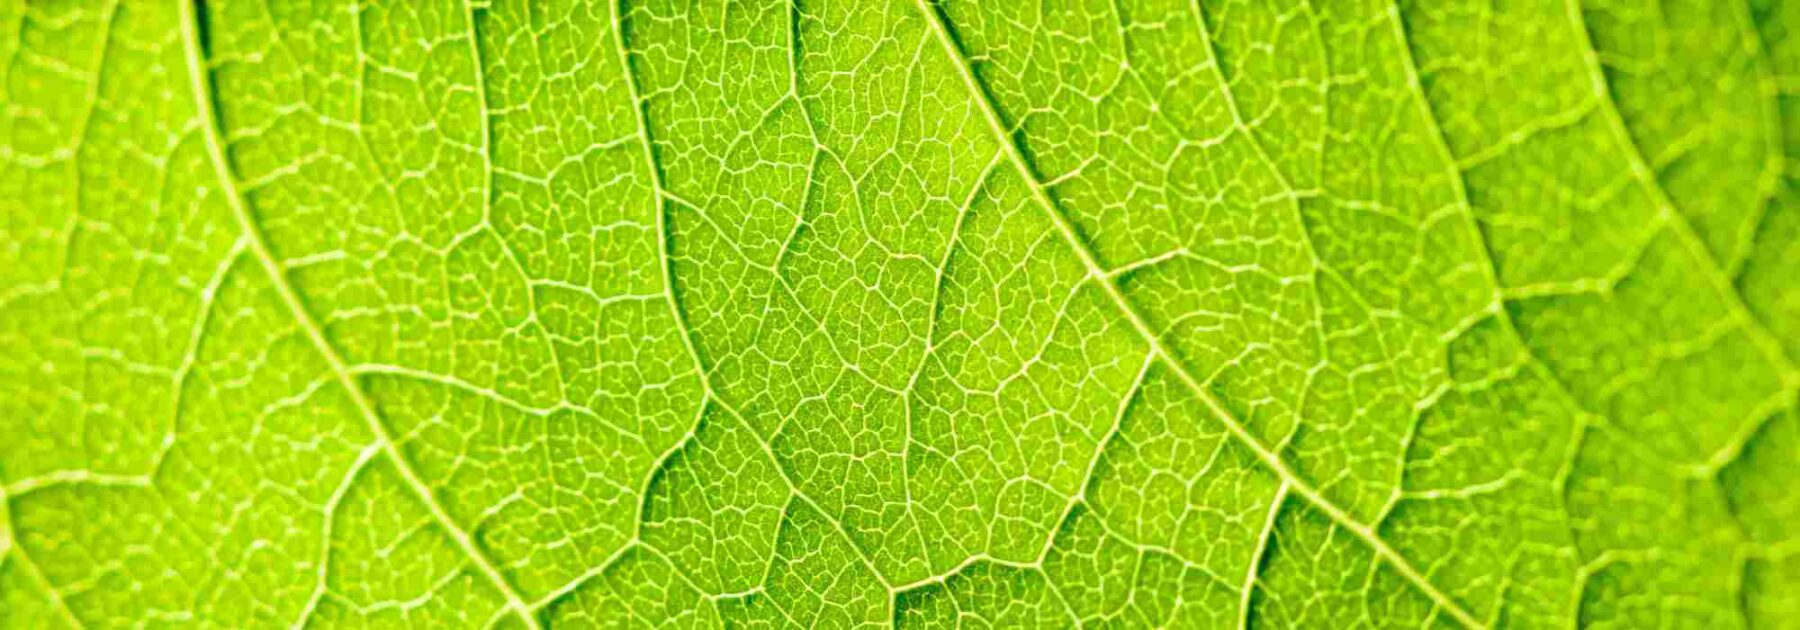 La respiration des plantes : un processus complexe et fascinant